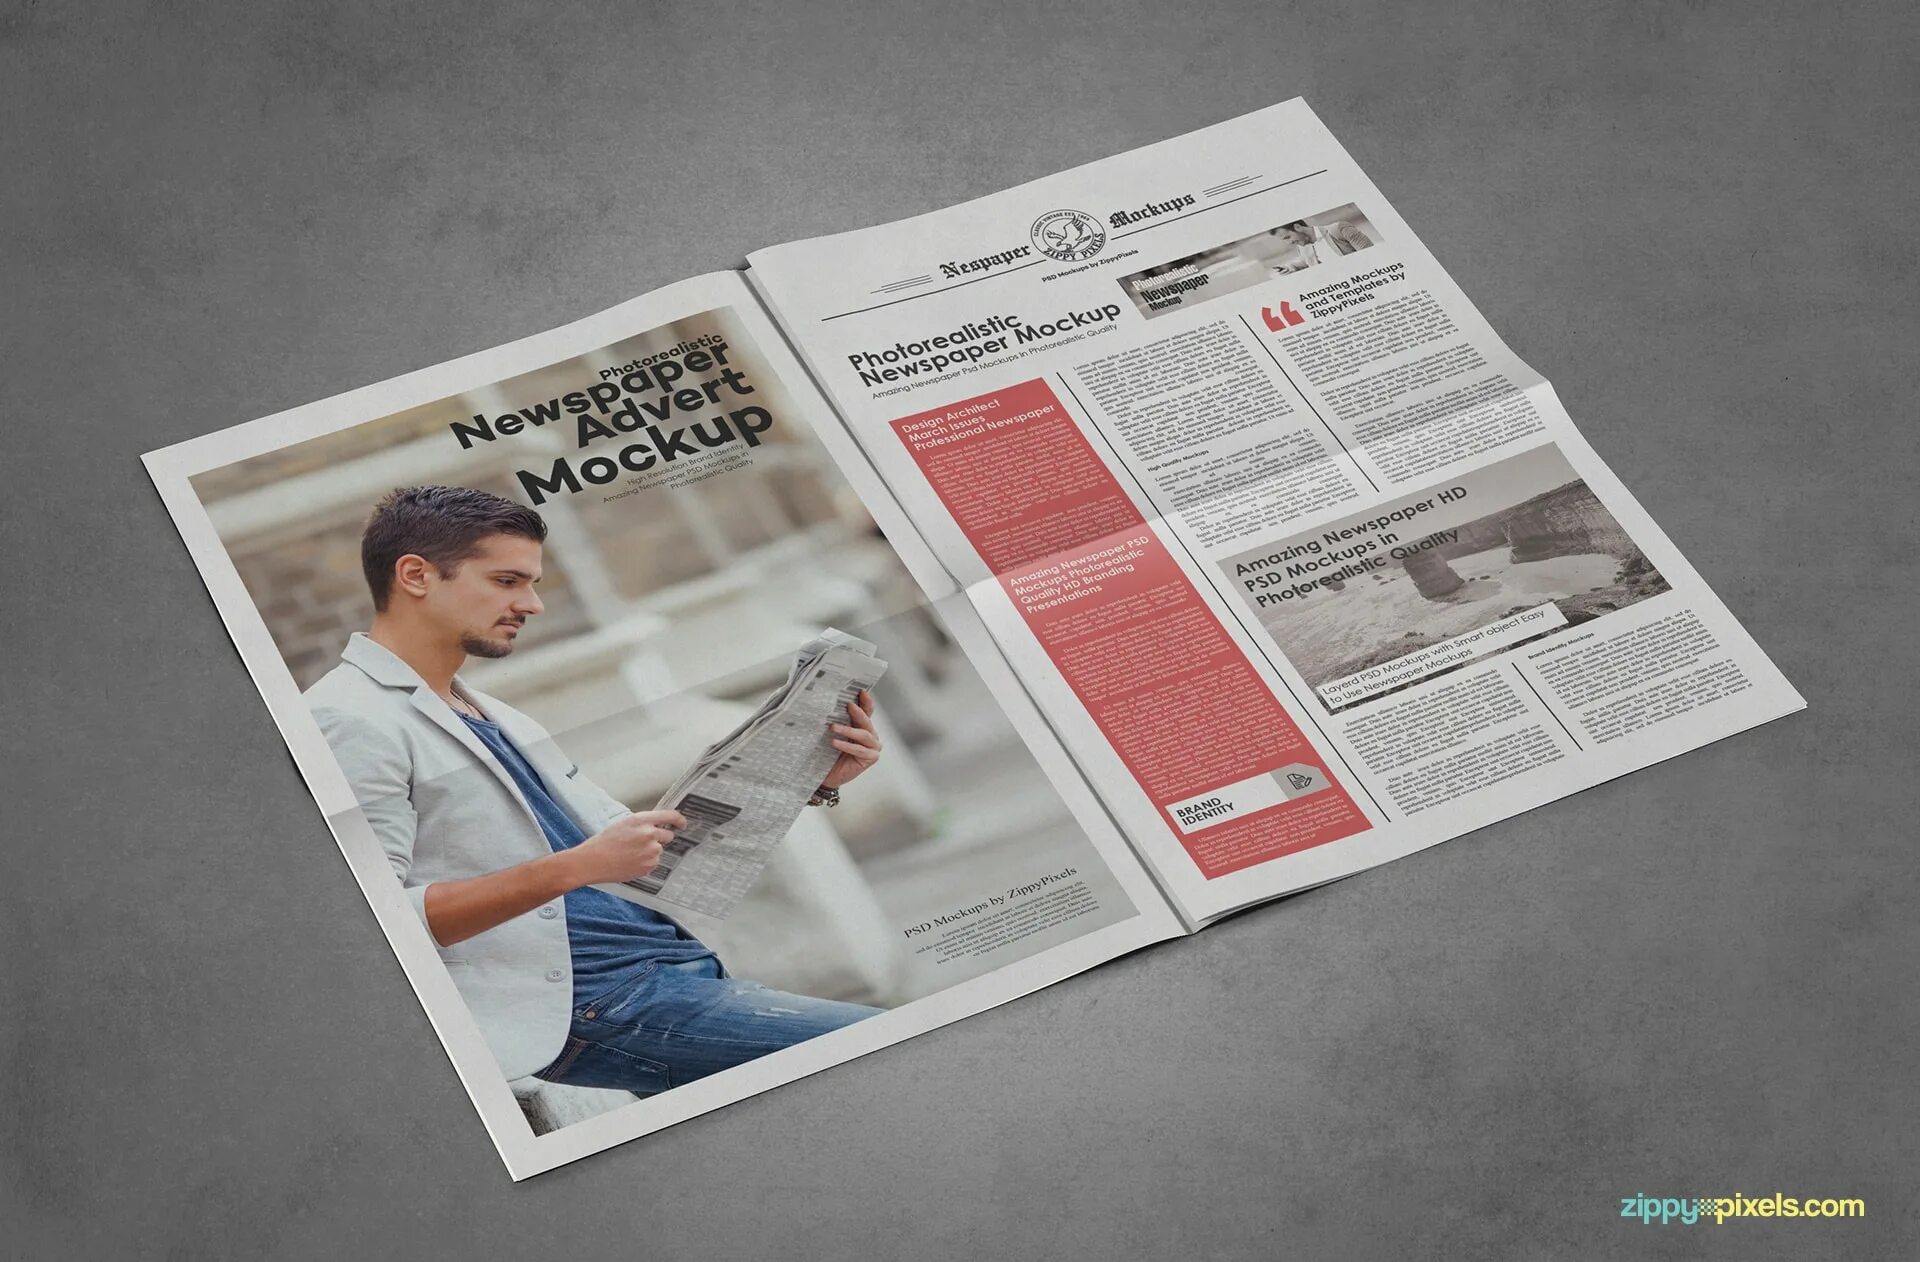 Newspaper page. Газета мокап. Дизайн газеты. Современный дизайн газеты. Газета графический дизайн.